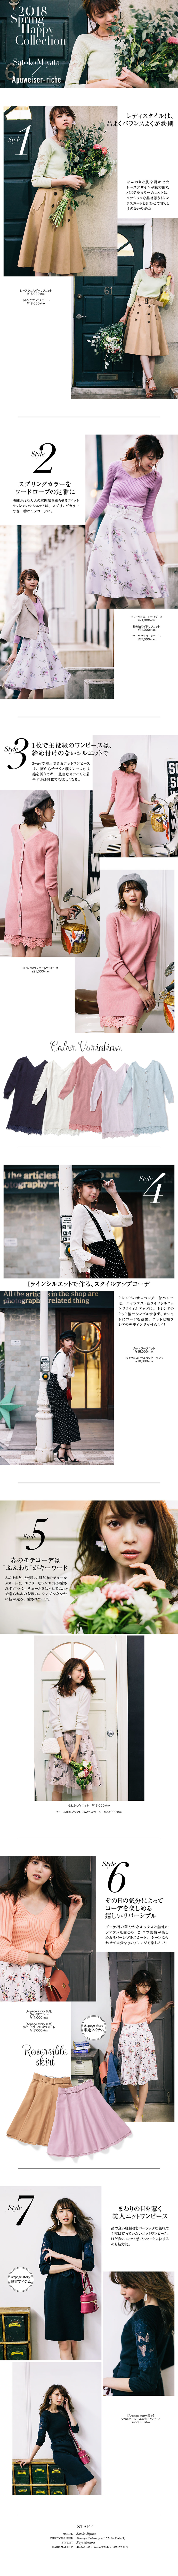 WEB ALBUM vol.26 - Apuweiser-riche × 宮田聡子